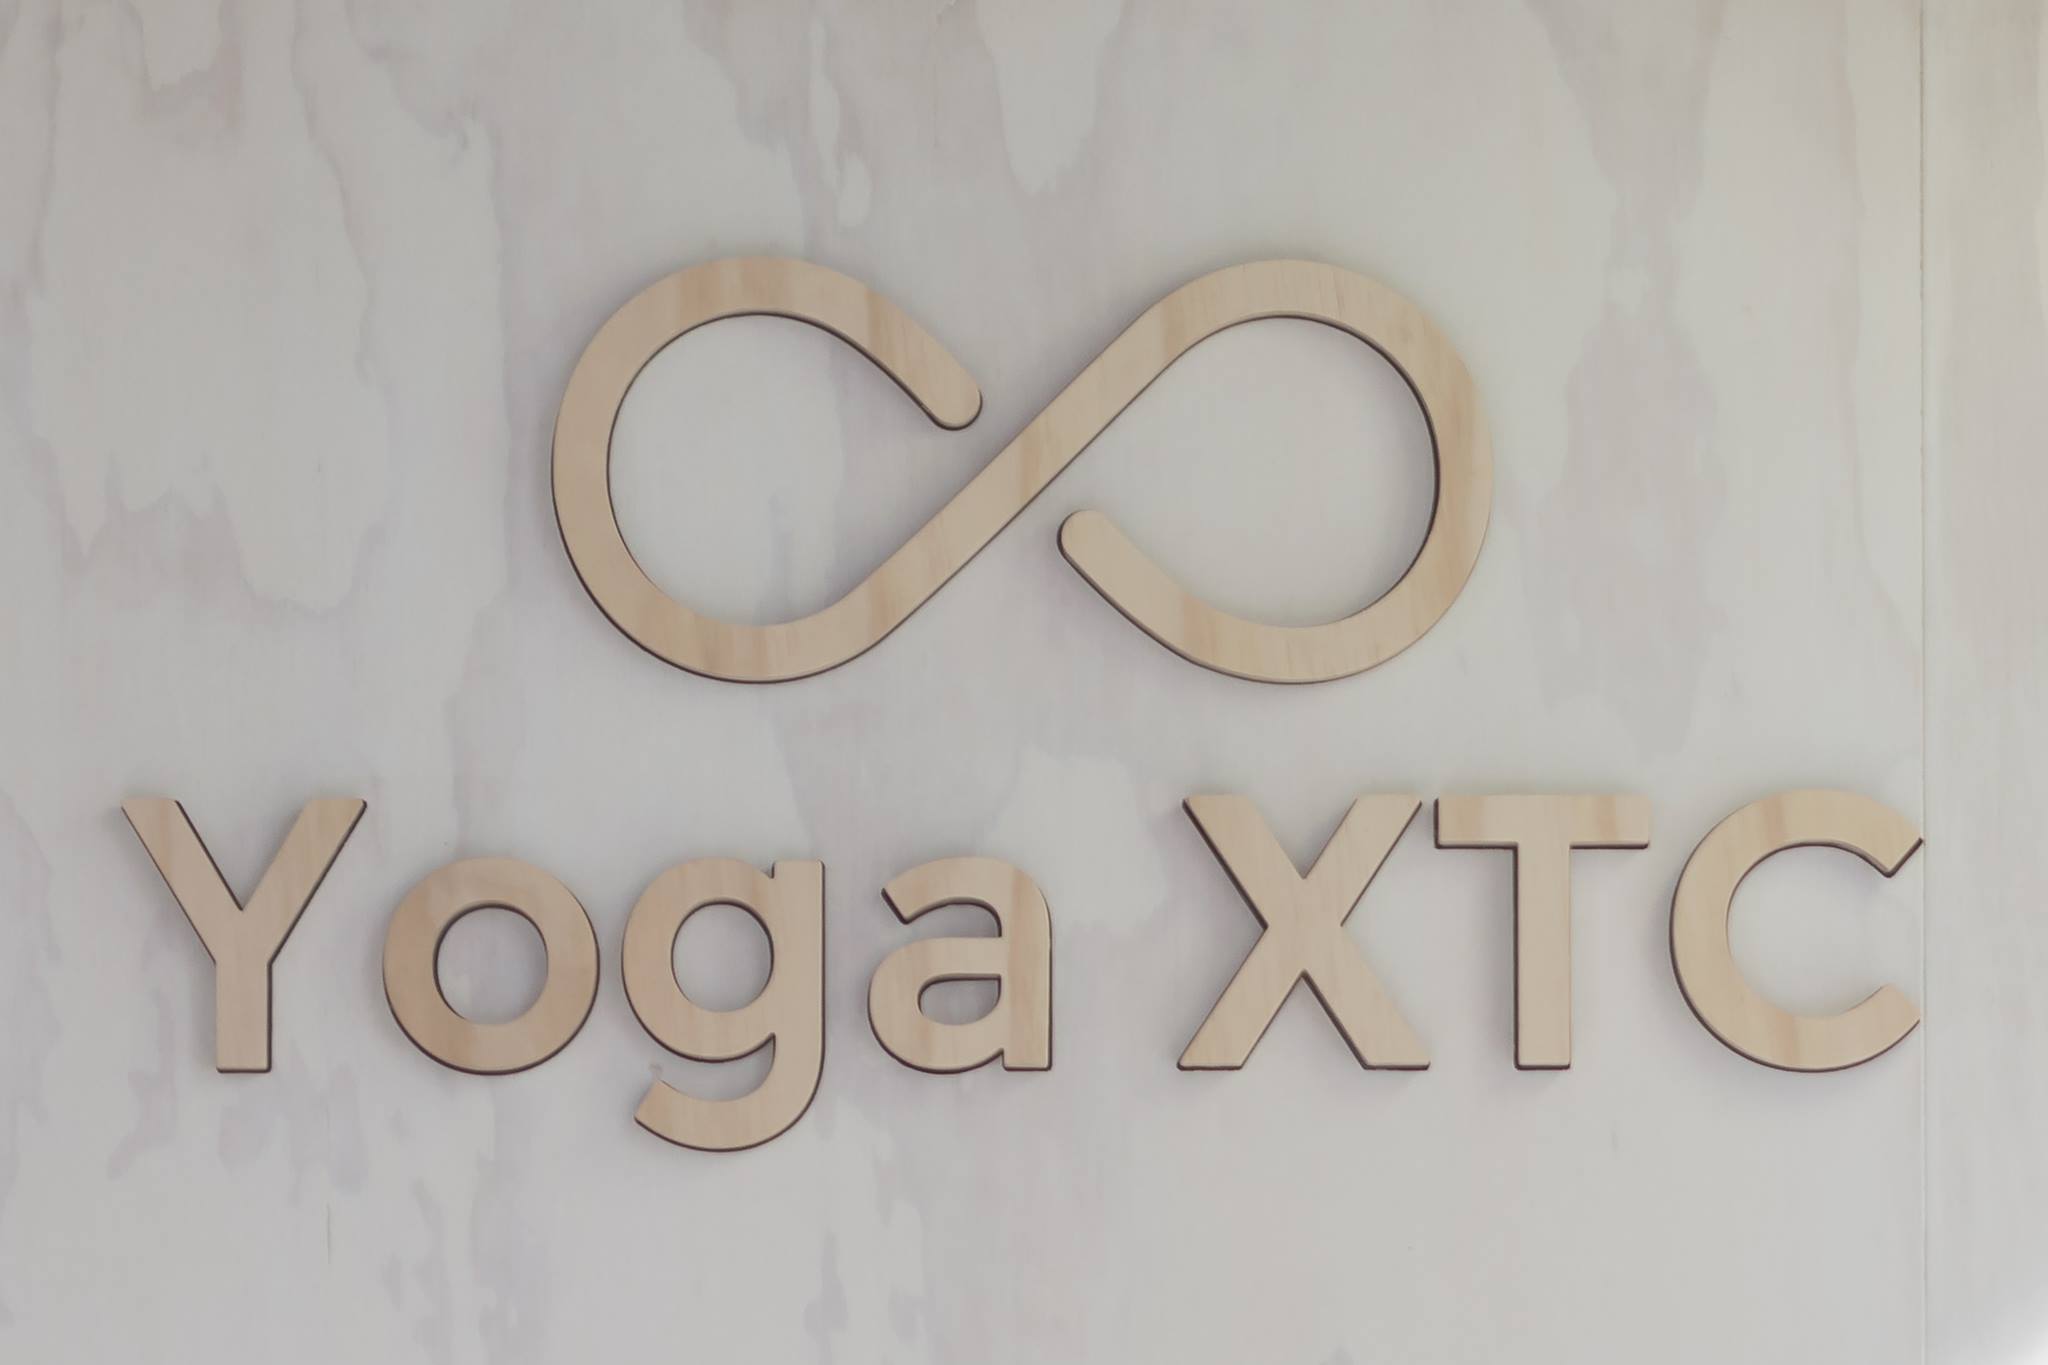 Yoga Xtc Image